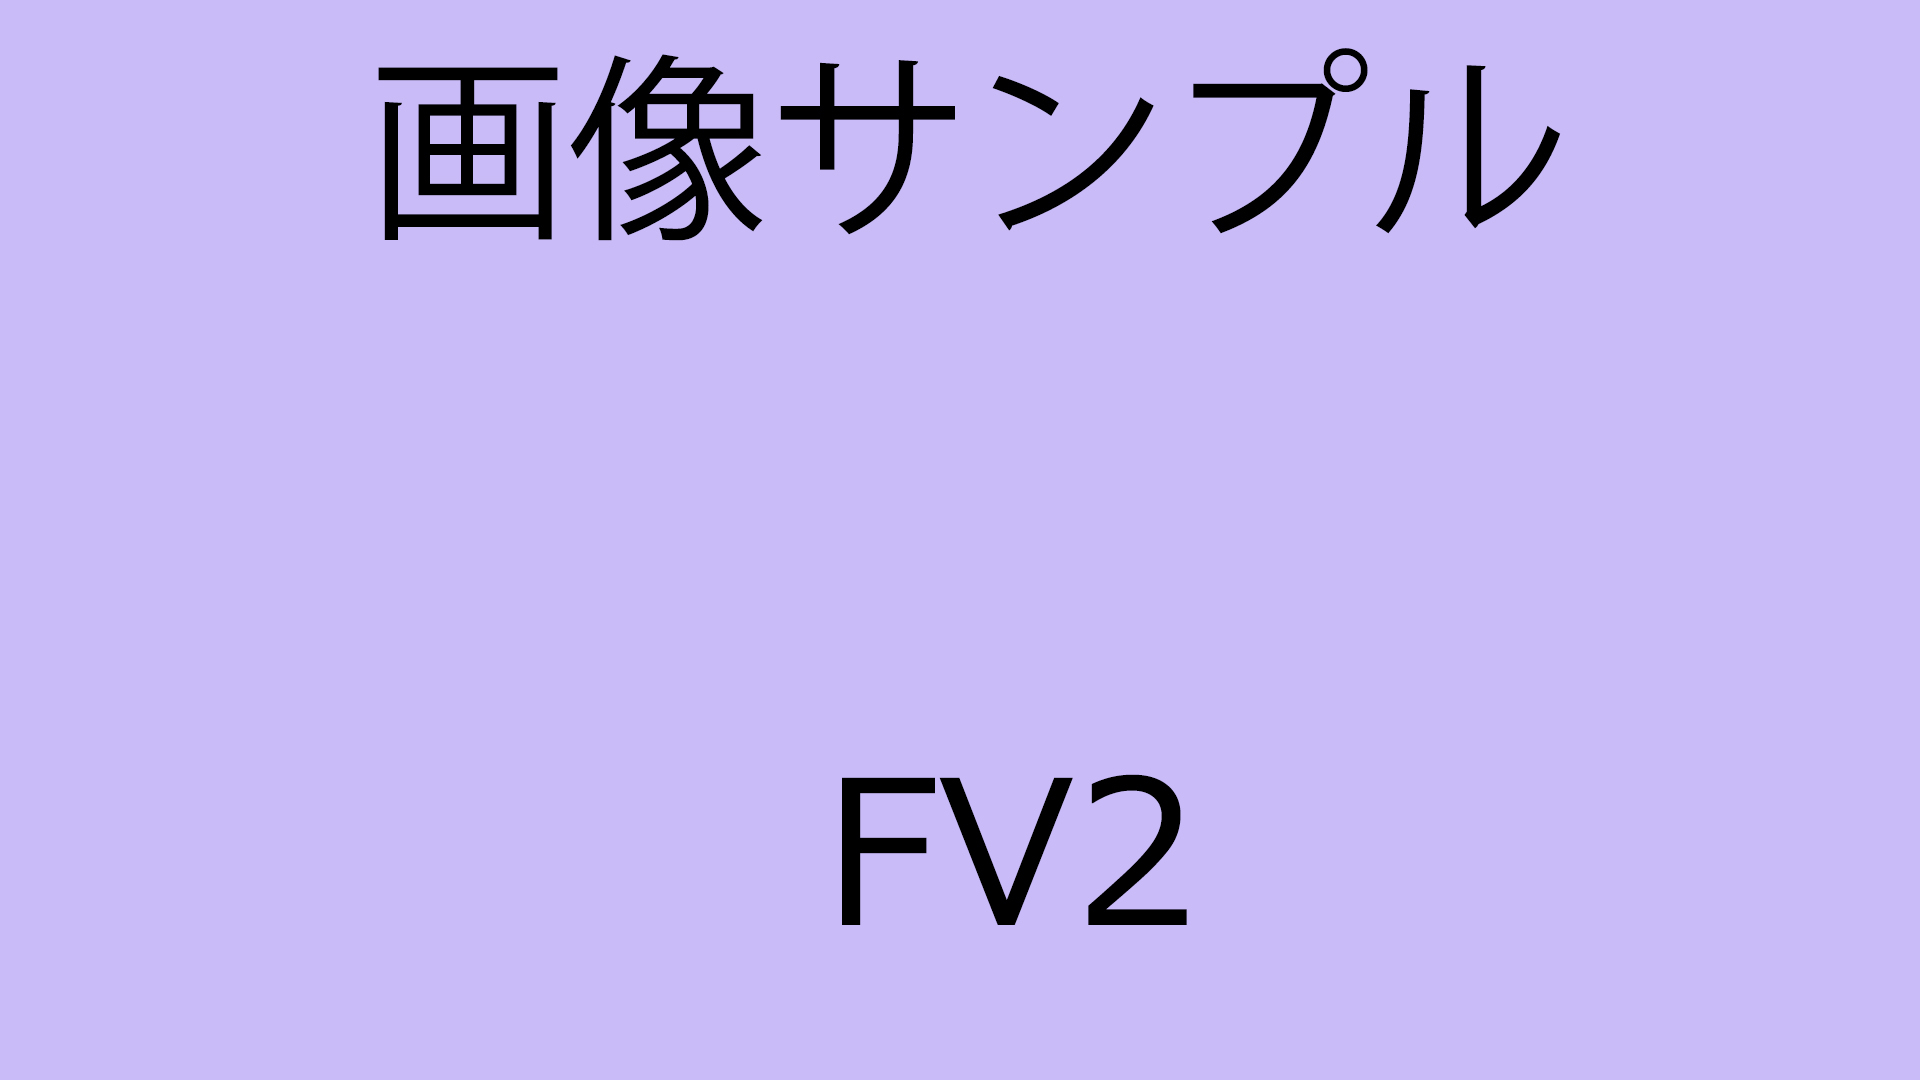 fv2